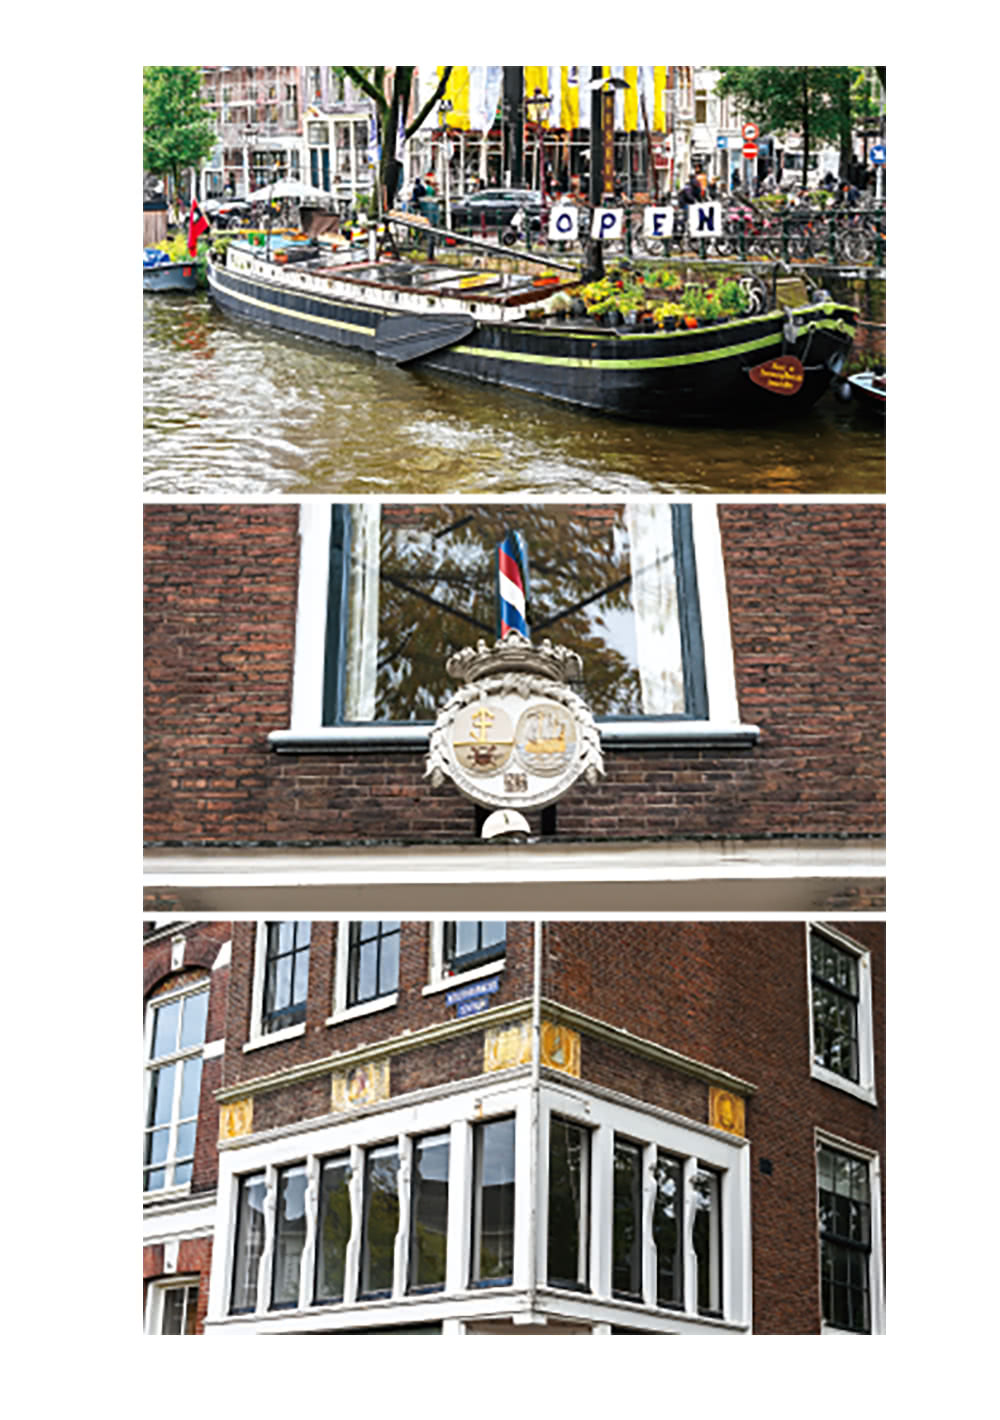 我在荷蘭當都更說客：阿姆斯特丹以人為本的10年街區再生筆記